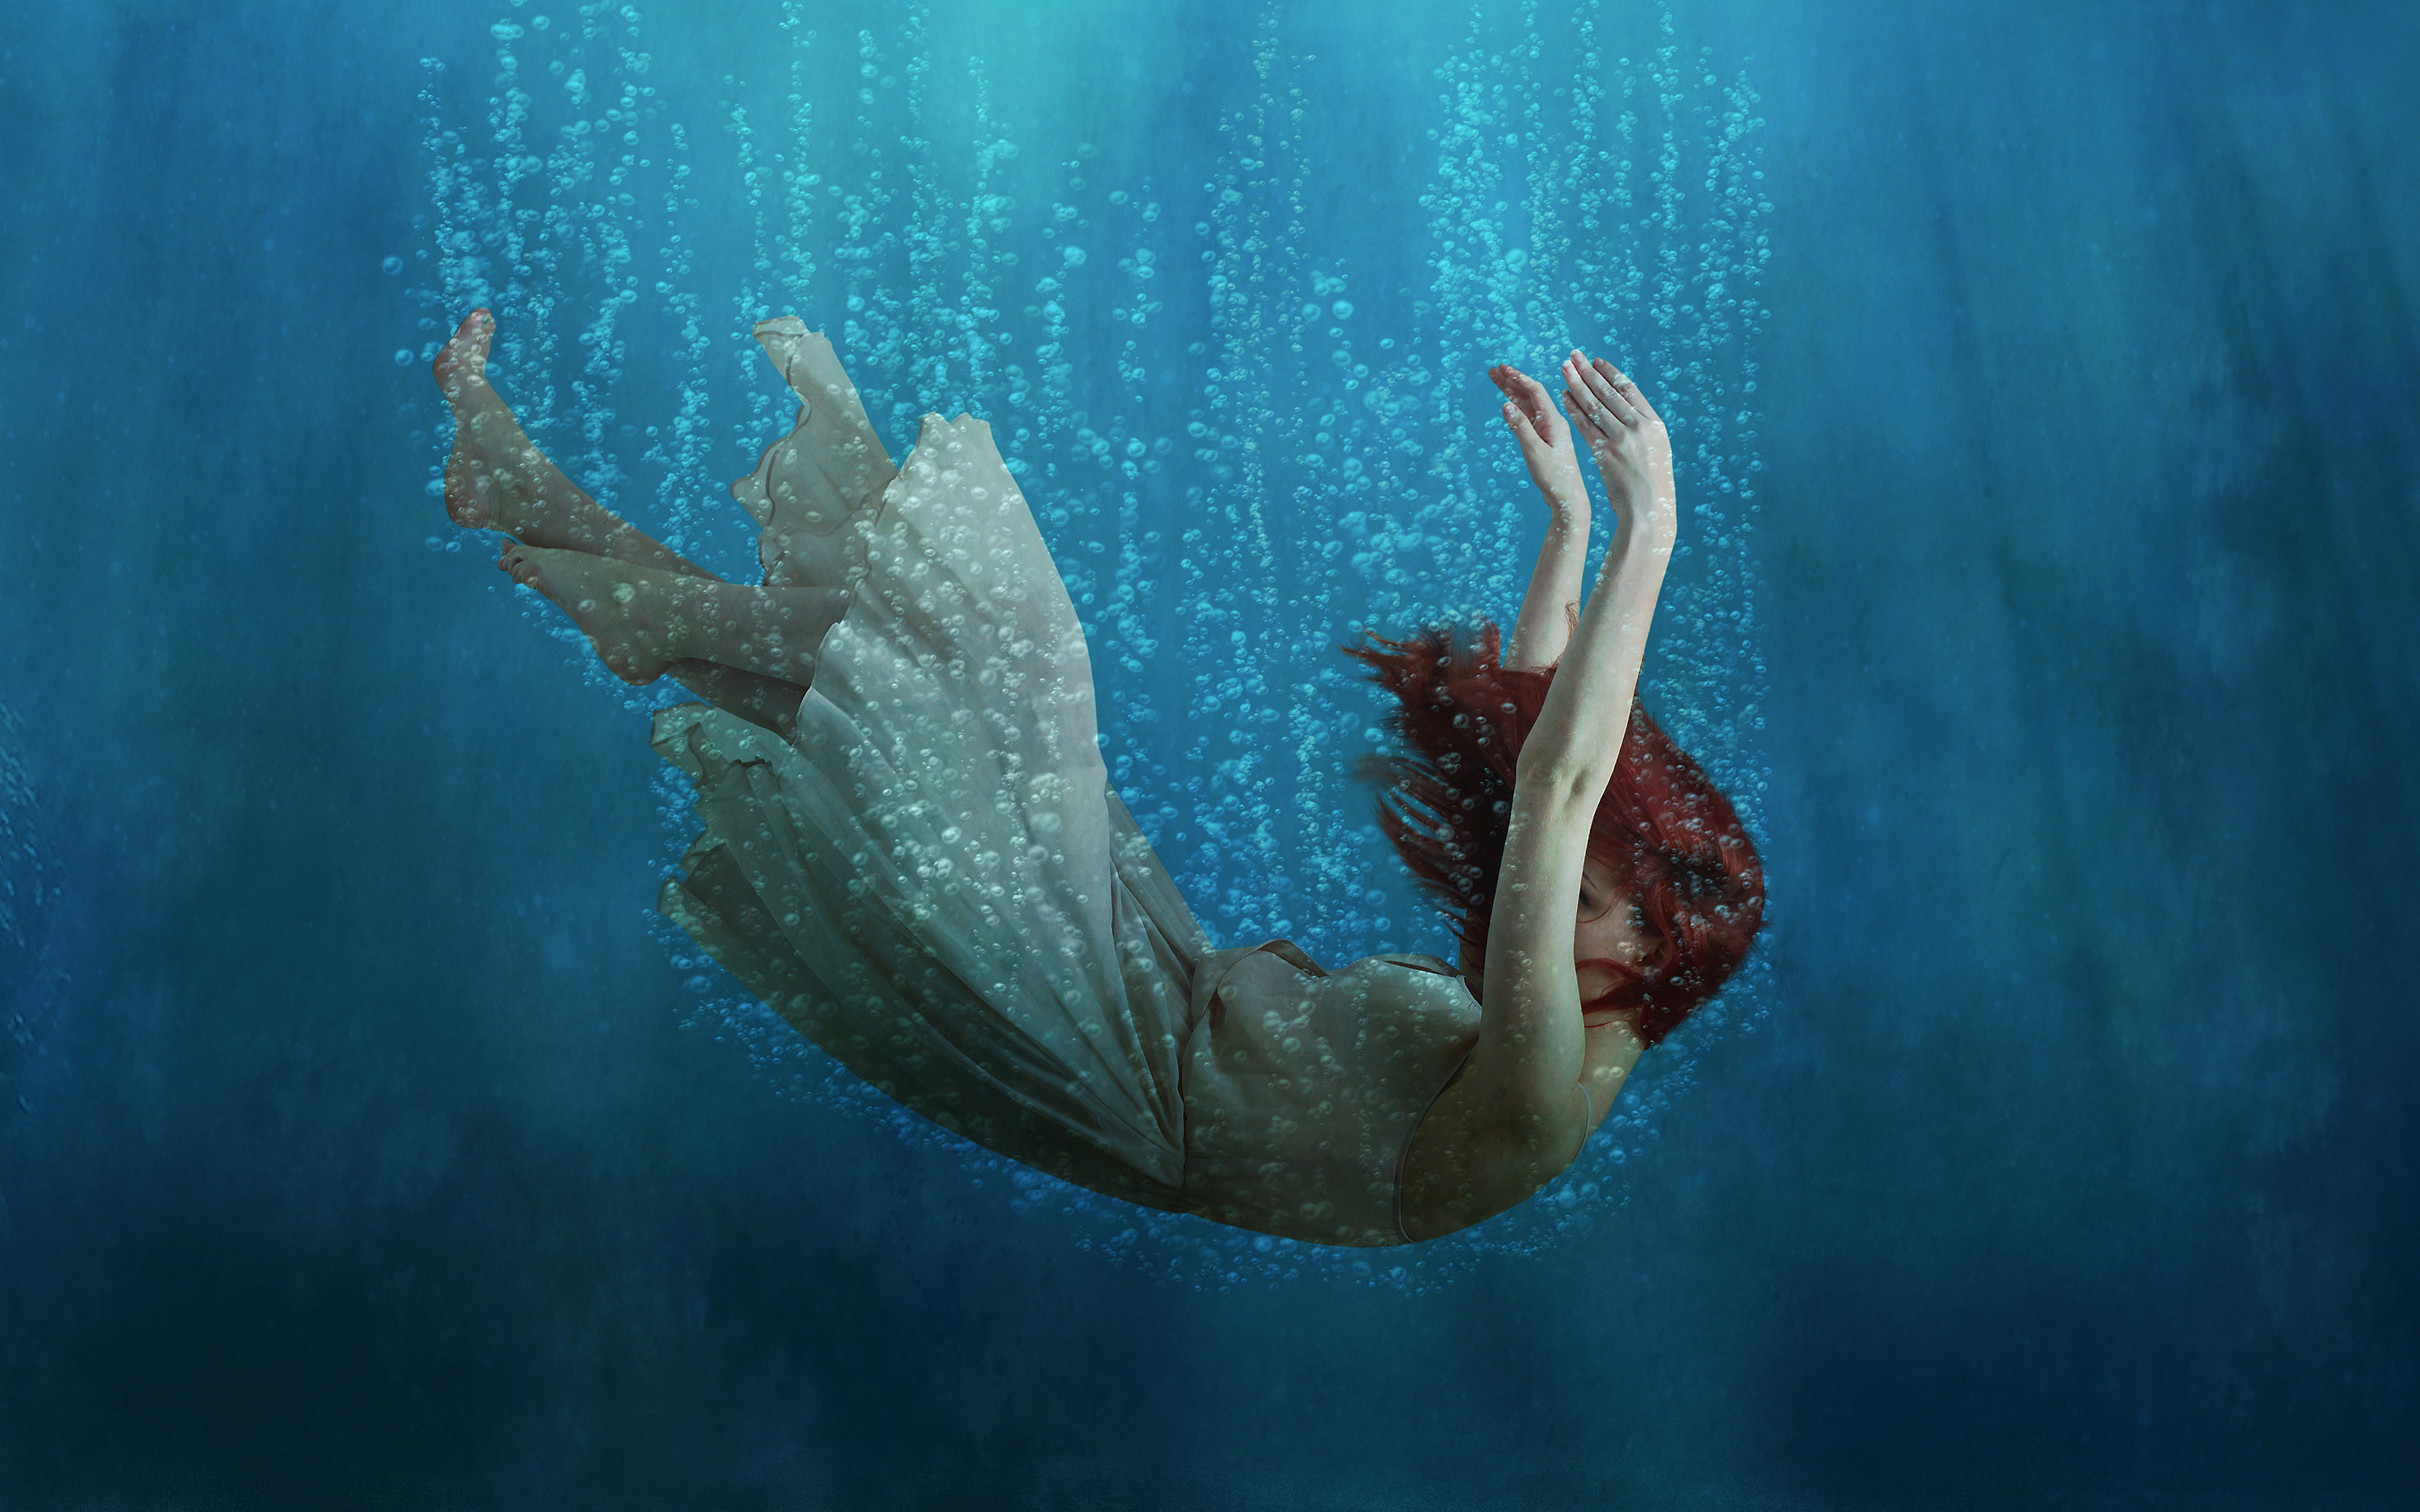 Underwater Girl Dream3733712352 - Underwater Girl Dream - Underwater, Girl, Dream